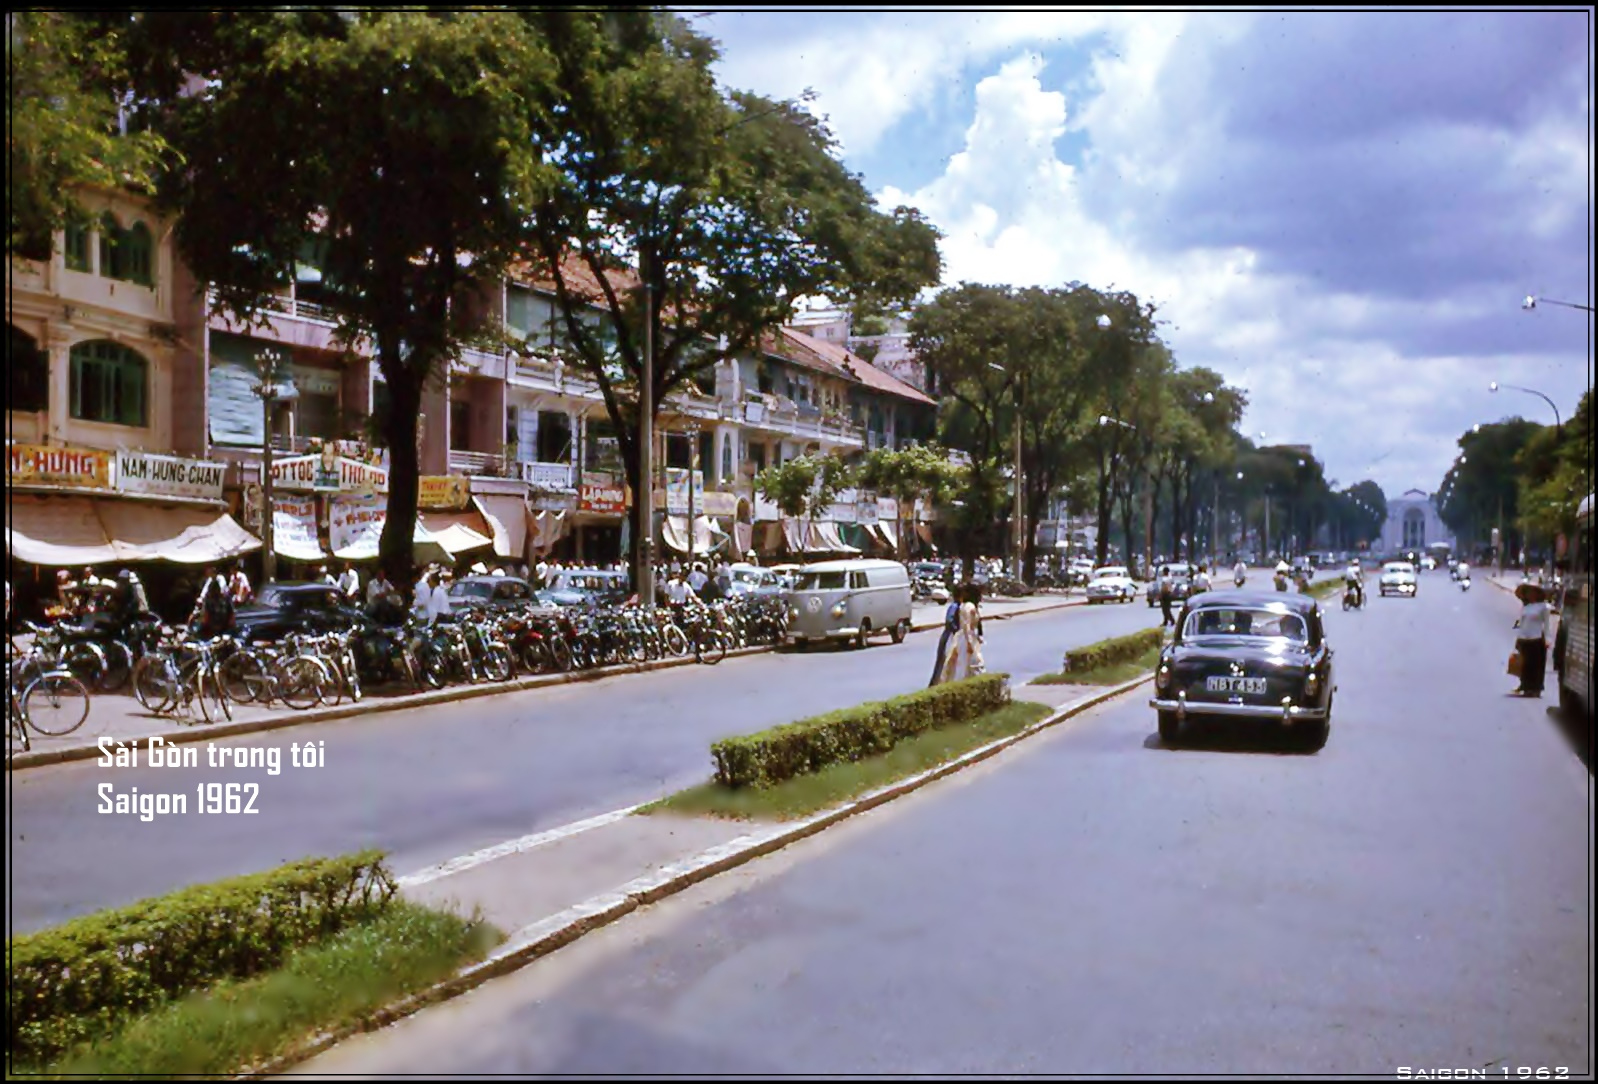 Đại lộ Lê Lợi 1962. Ảnh: nhacxua.vn/ flickr mạnh hải